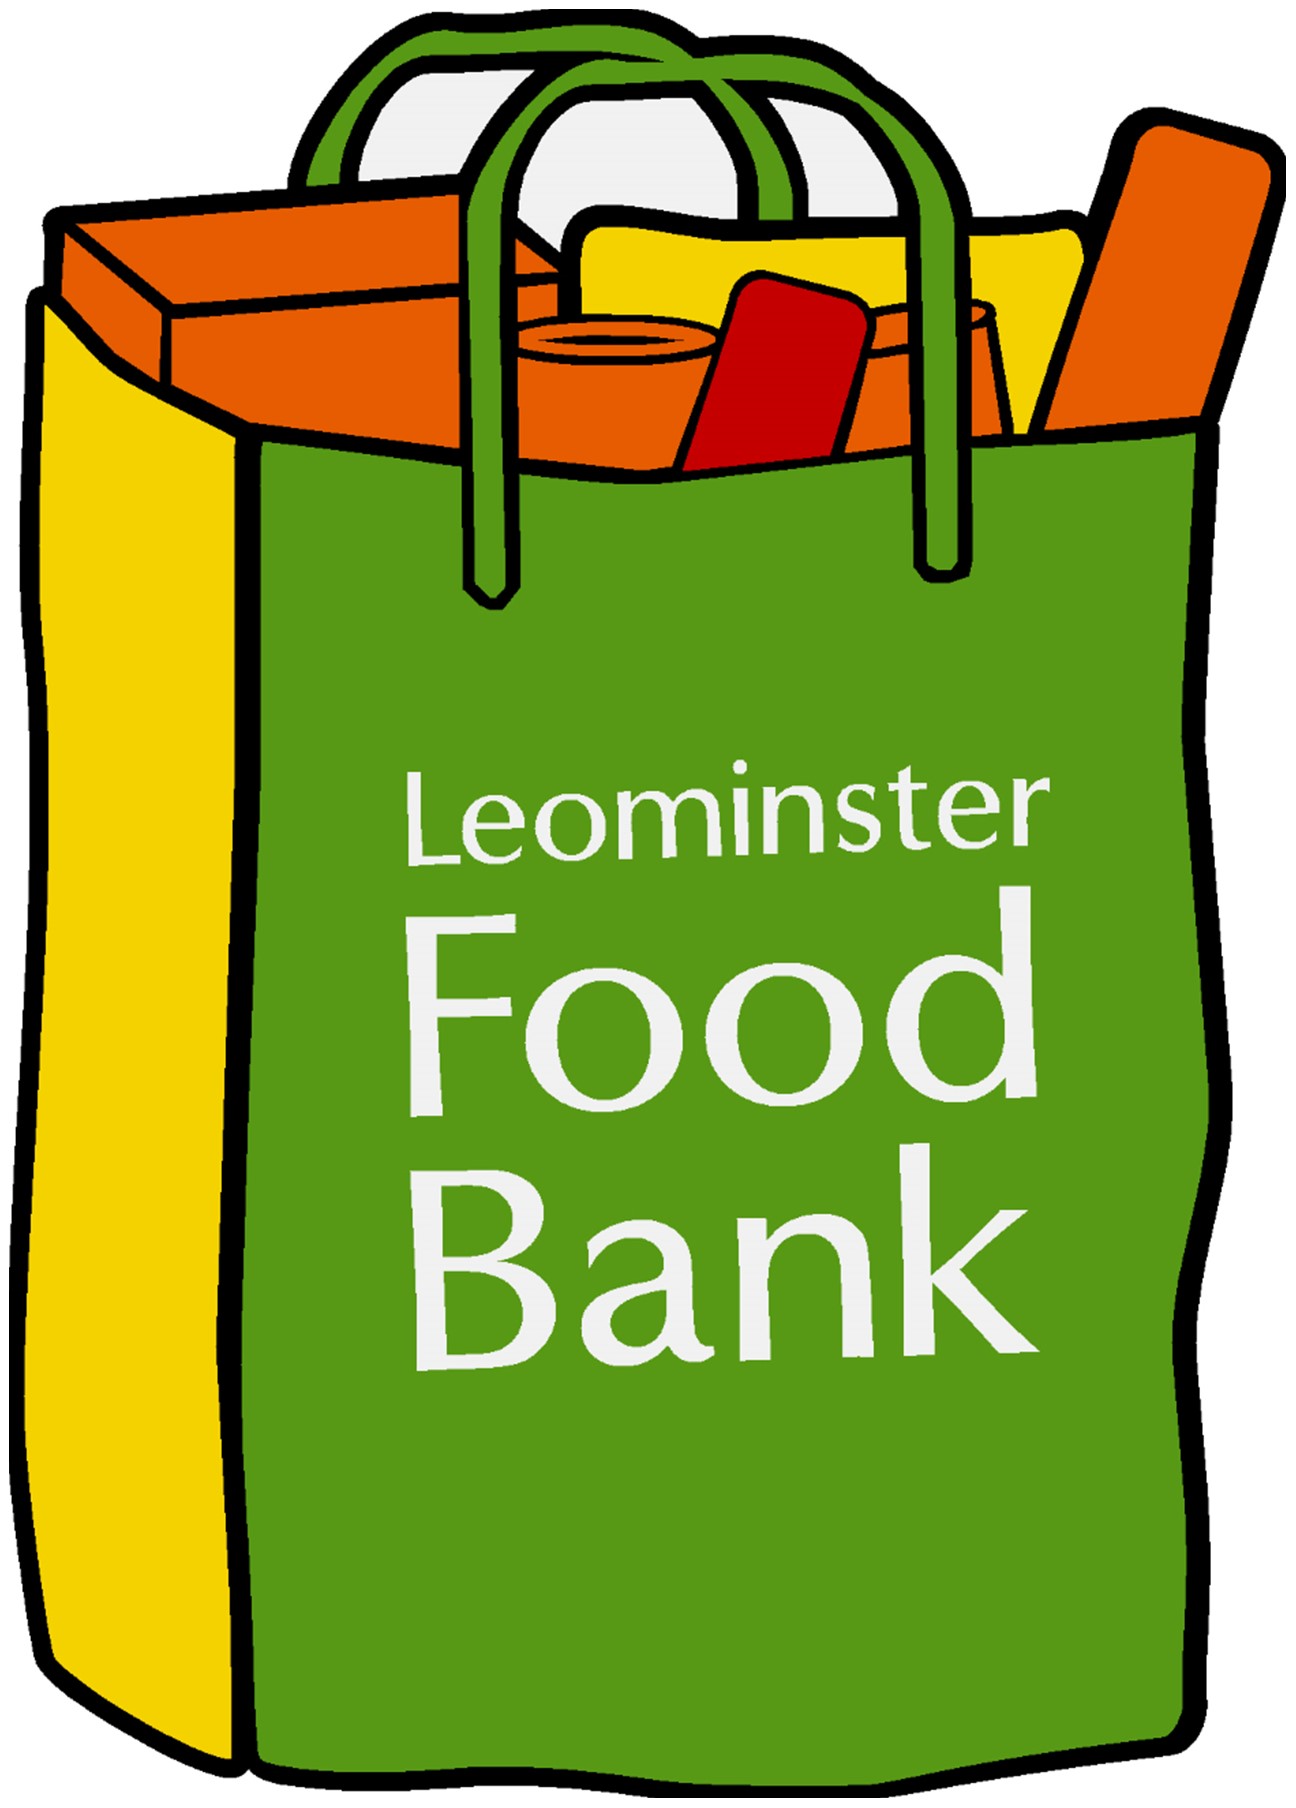 Leominster Food Bank logo